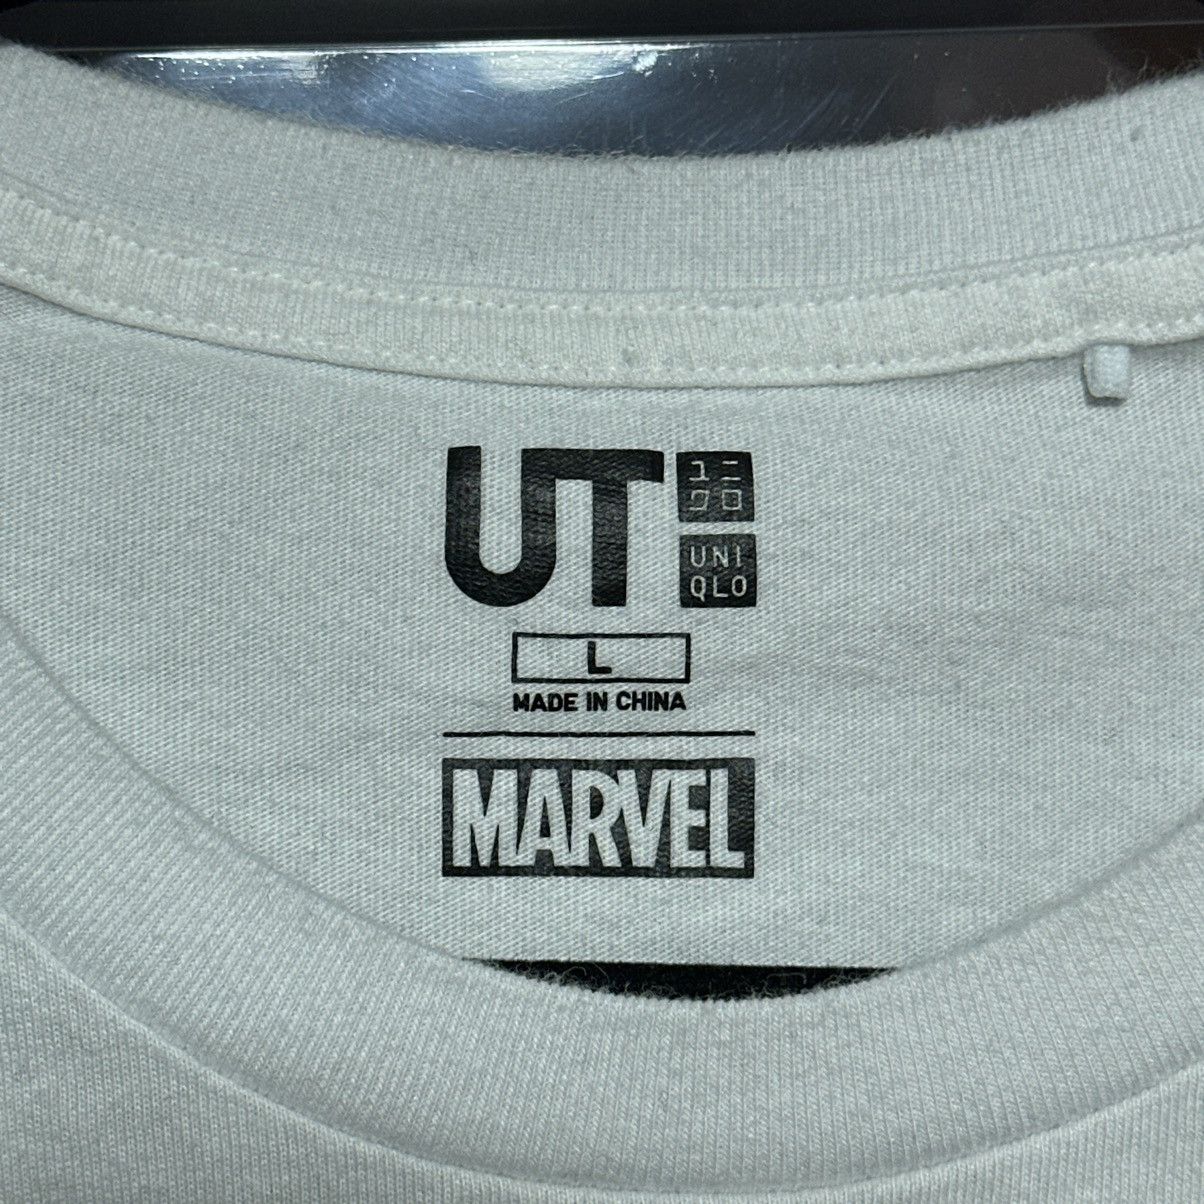 Uniqlo x Marvel Avengers Graphic T-Shirt Large - 5